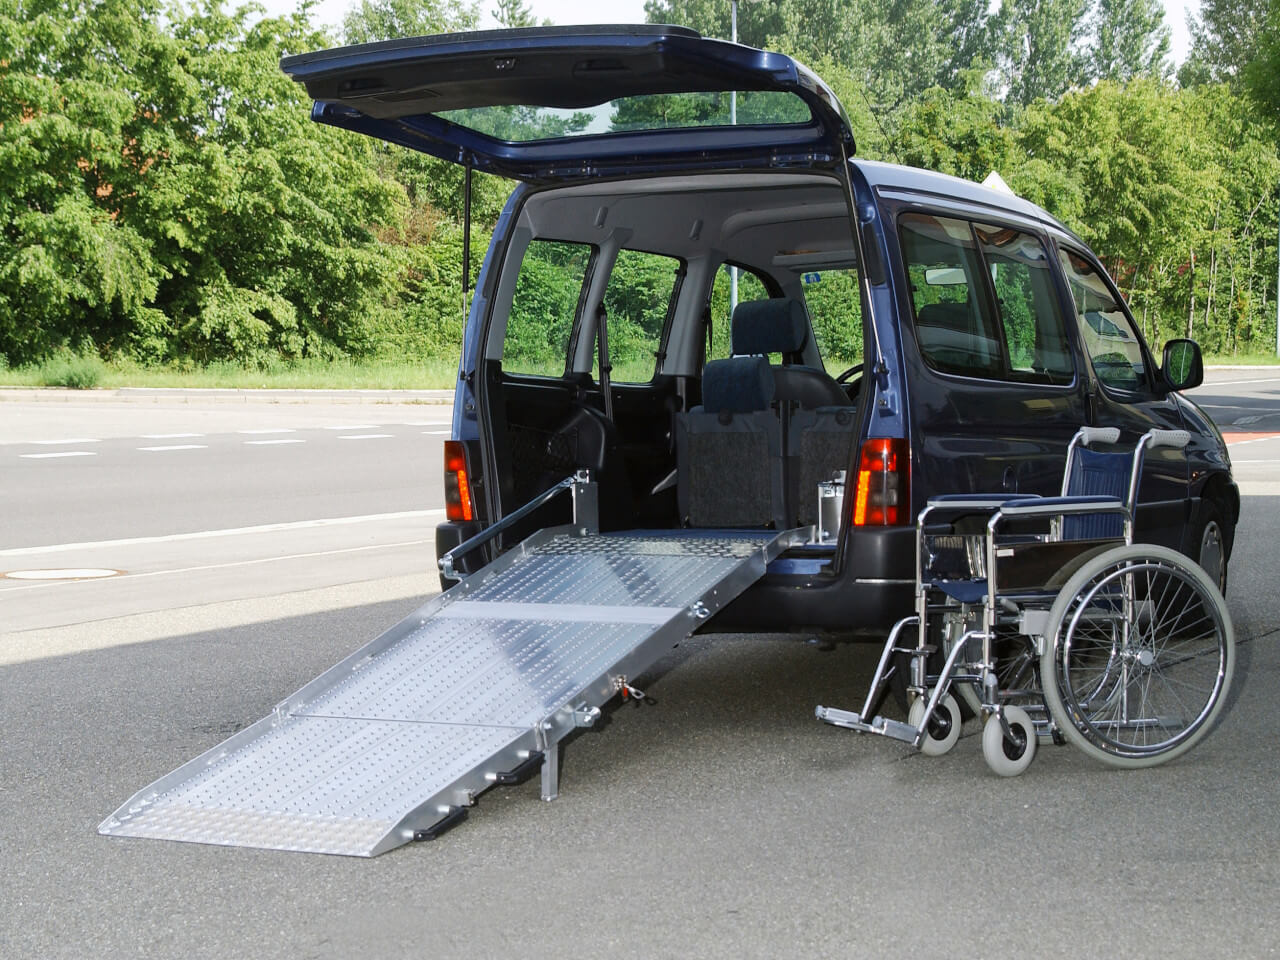 rollstuhl steht neben kleinfahrzeug caddy mit fest verbauter rollstuhlrampe